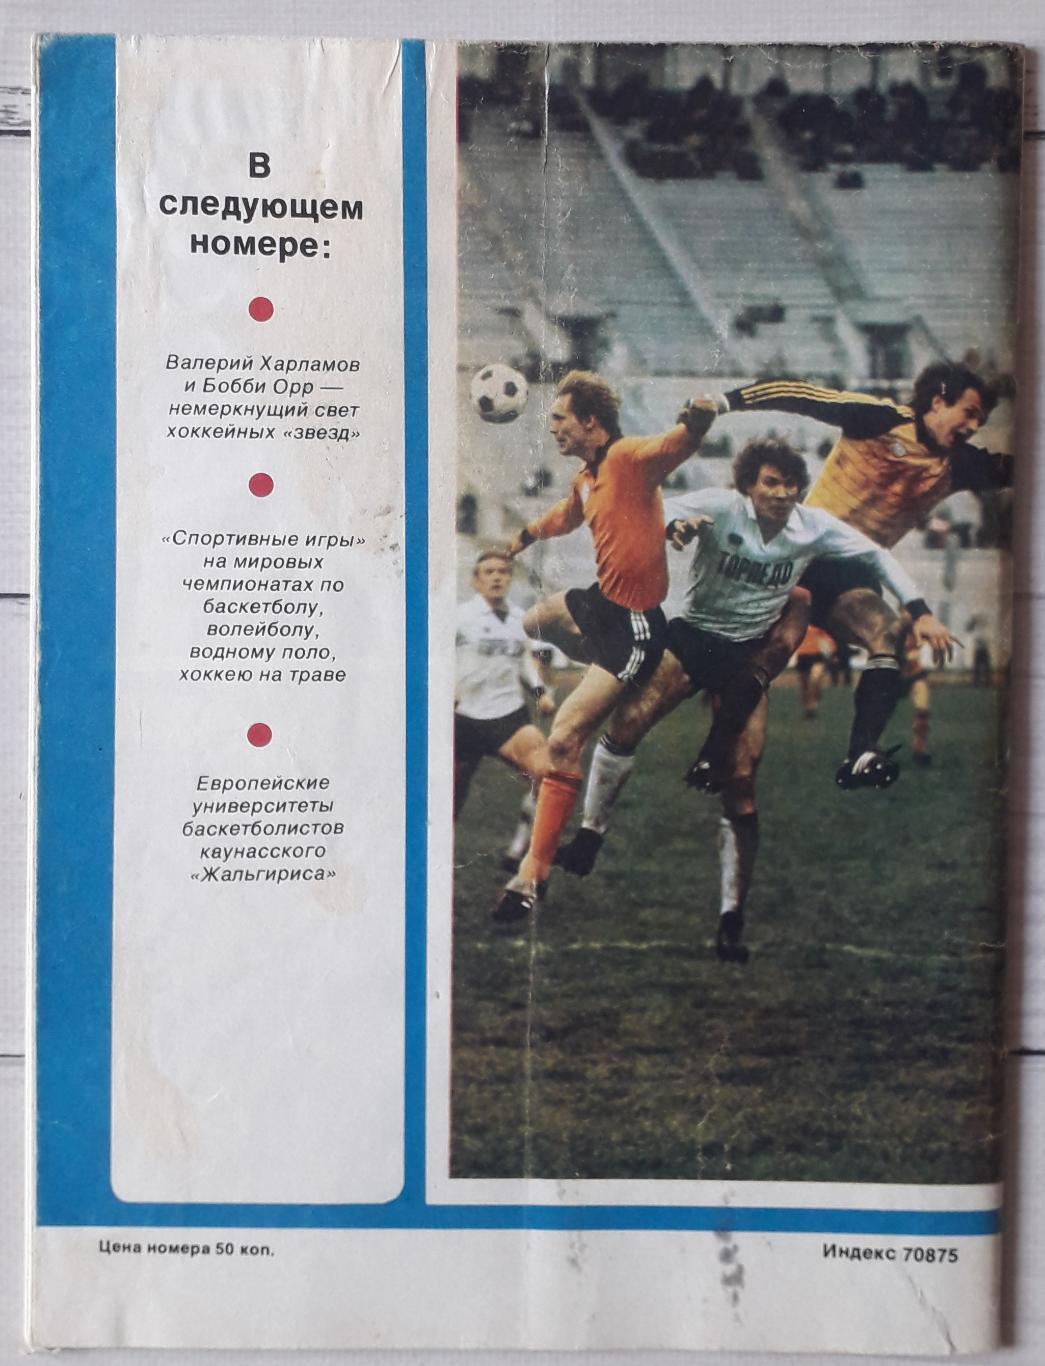 Журнал Спортивные игры 1986 №10 2